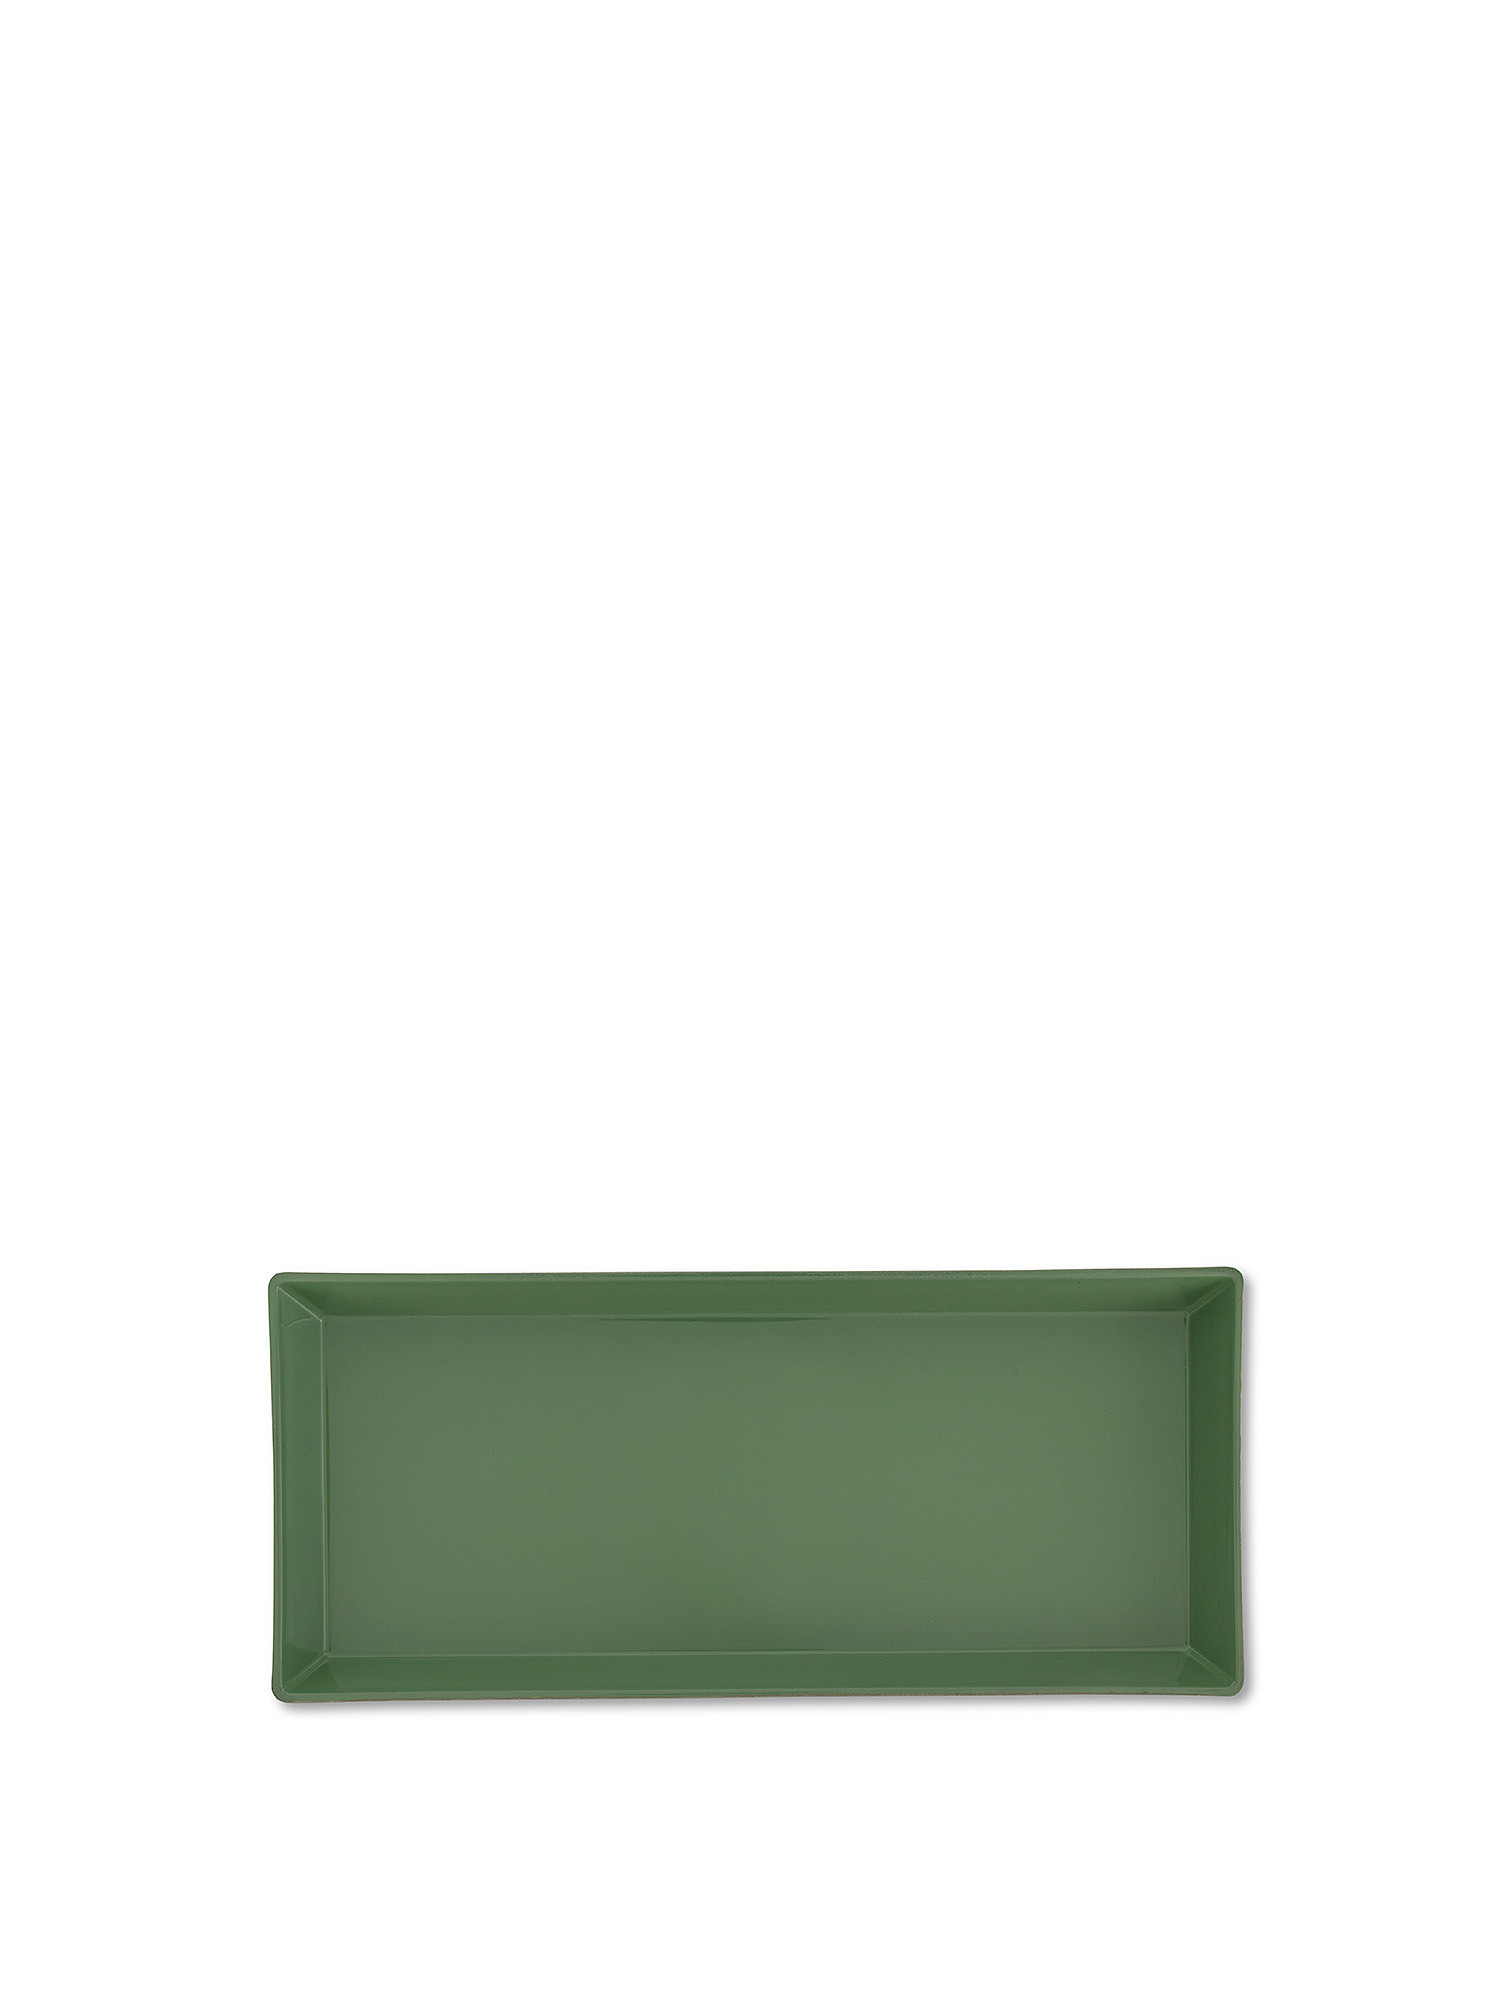 Vassoietto PVC colorato, Verde, large image number 0